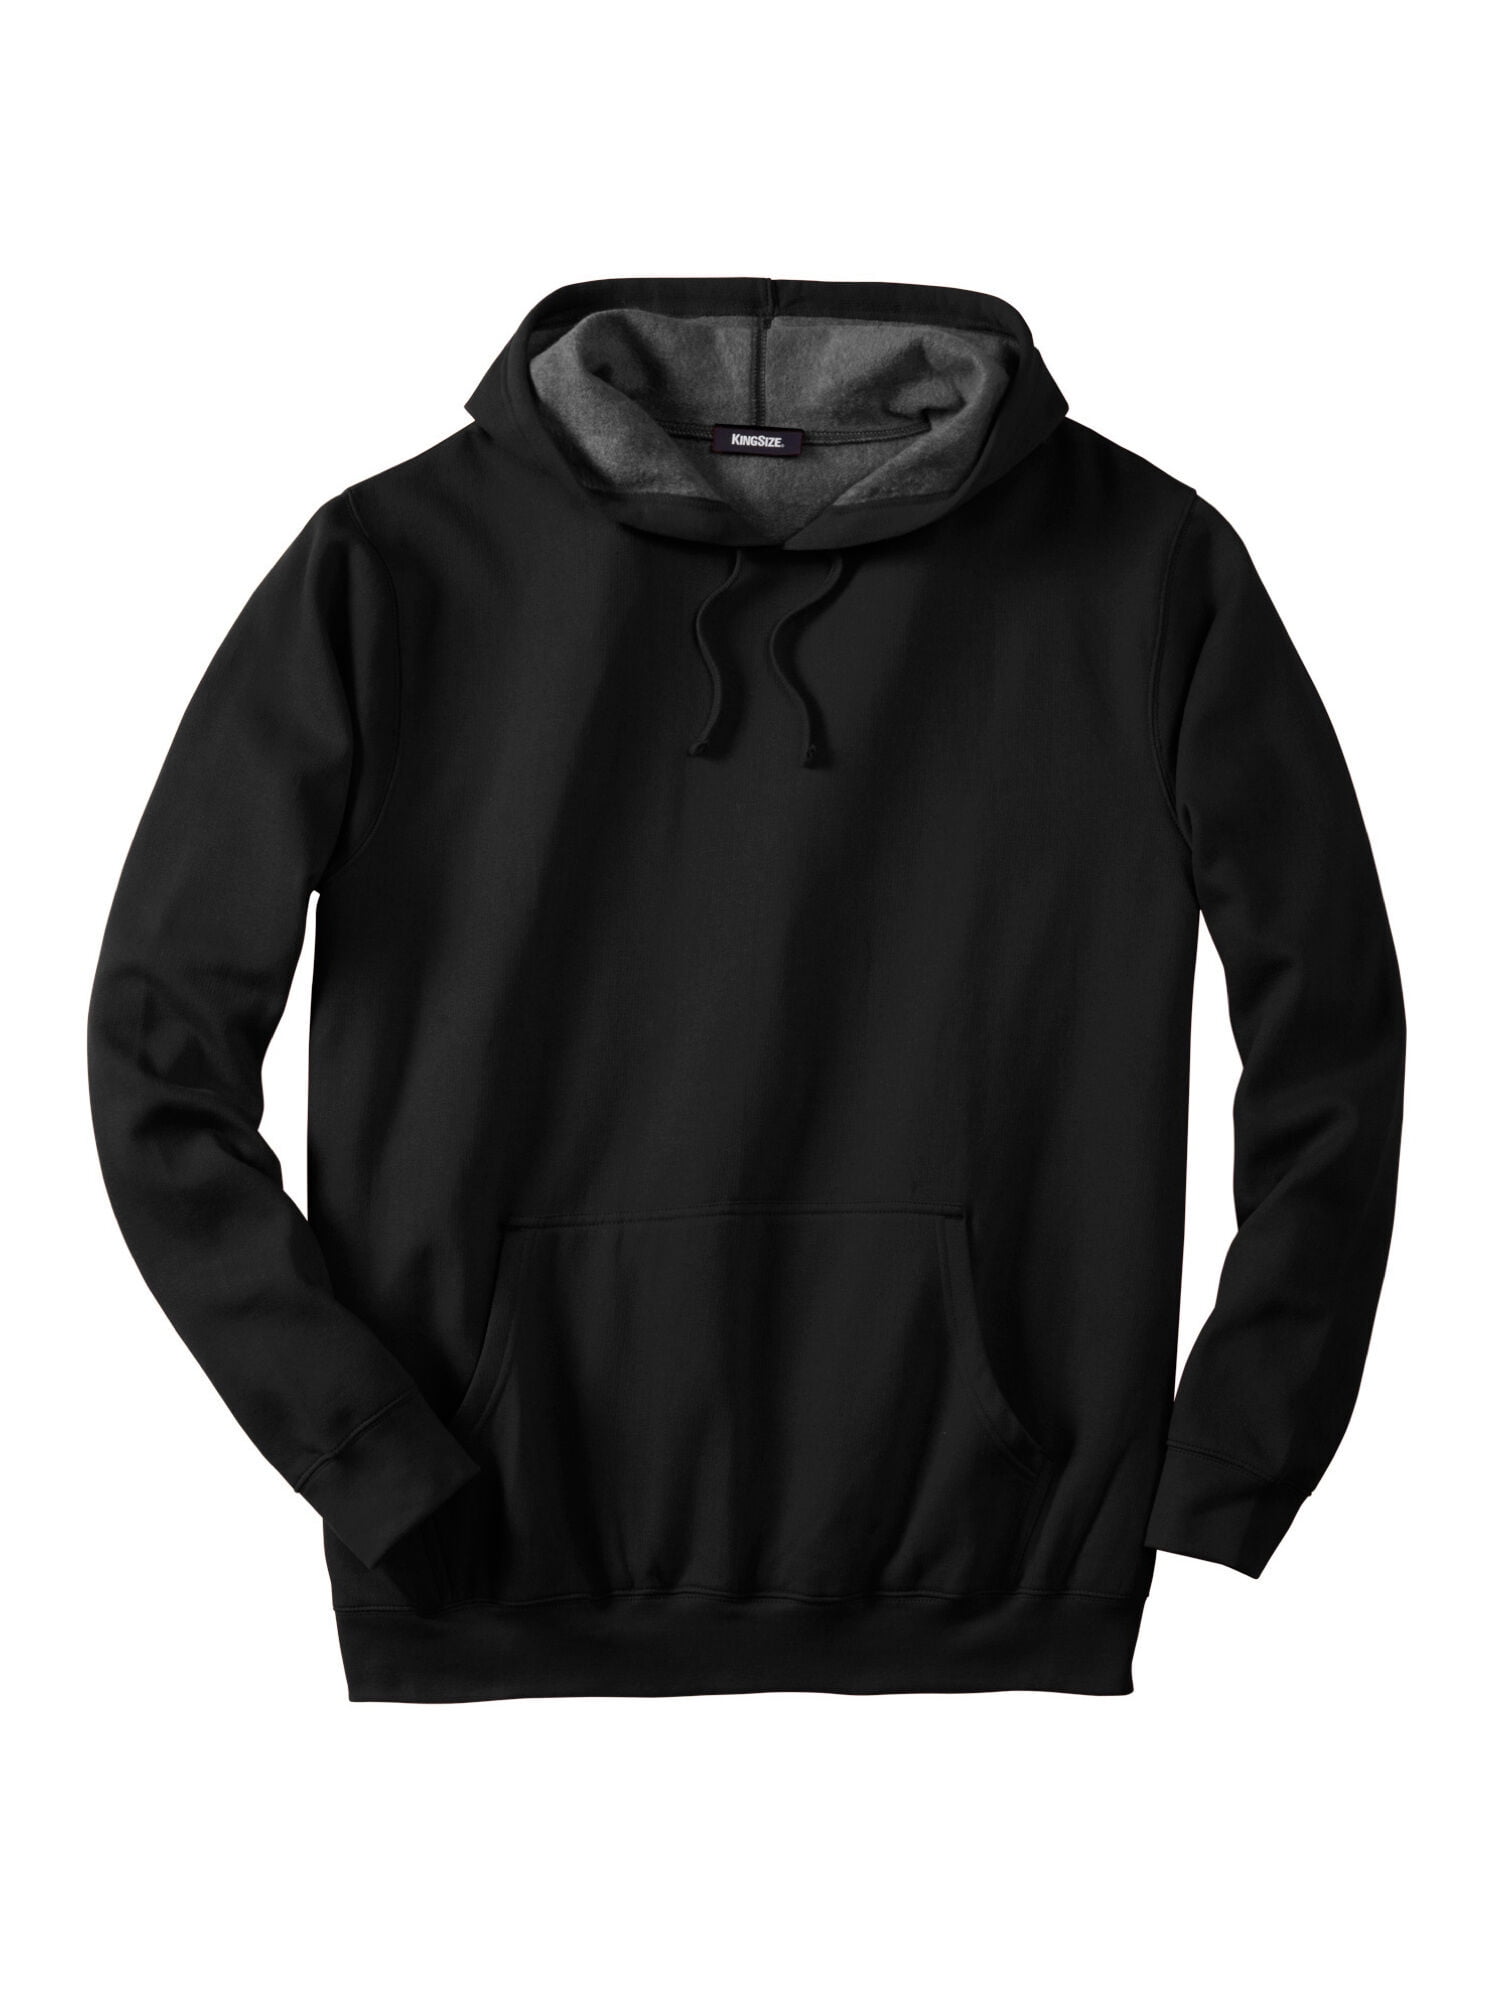 Black and White sweatshirt Black and White pullover Black and White sweater shirt jacket hoodies windbreaker Dog sweater Rare!